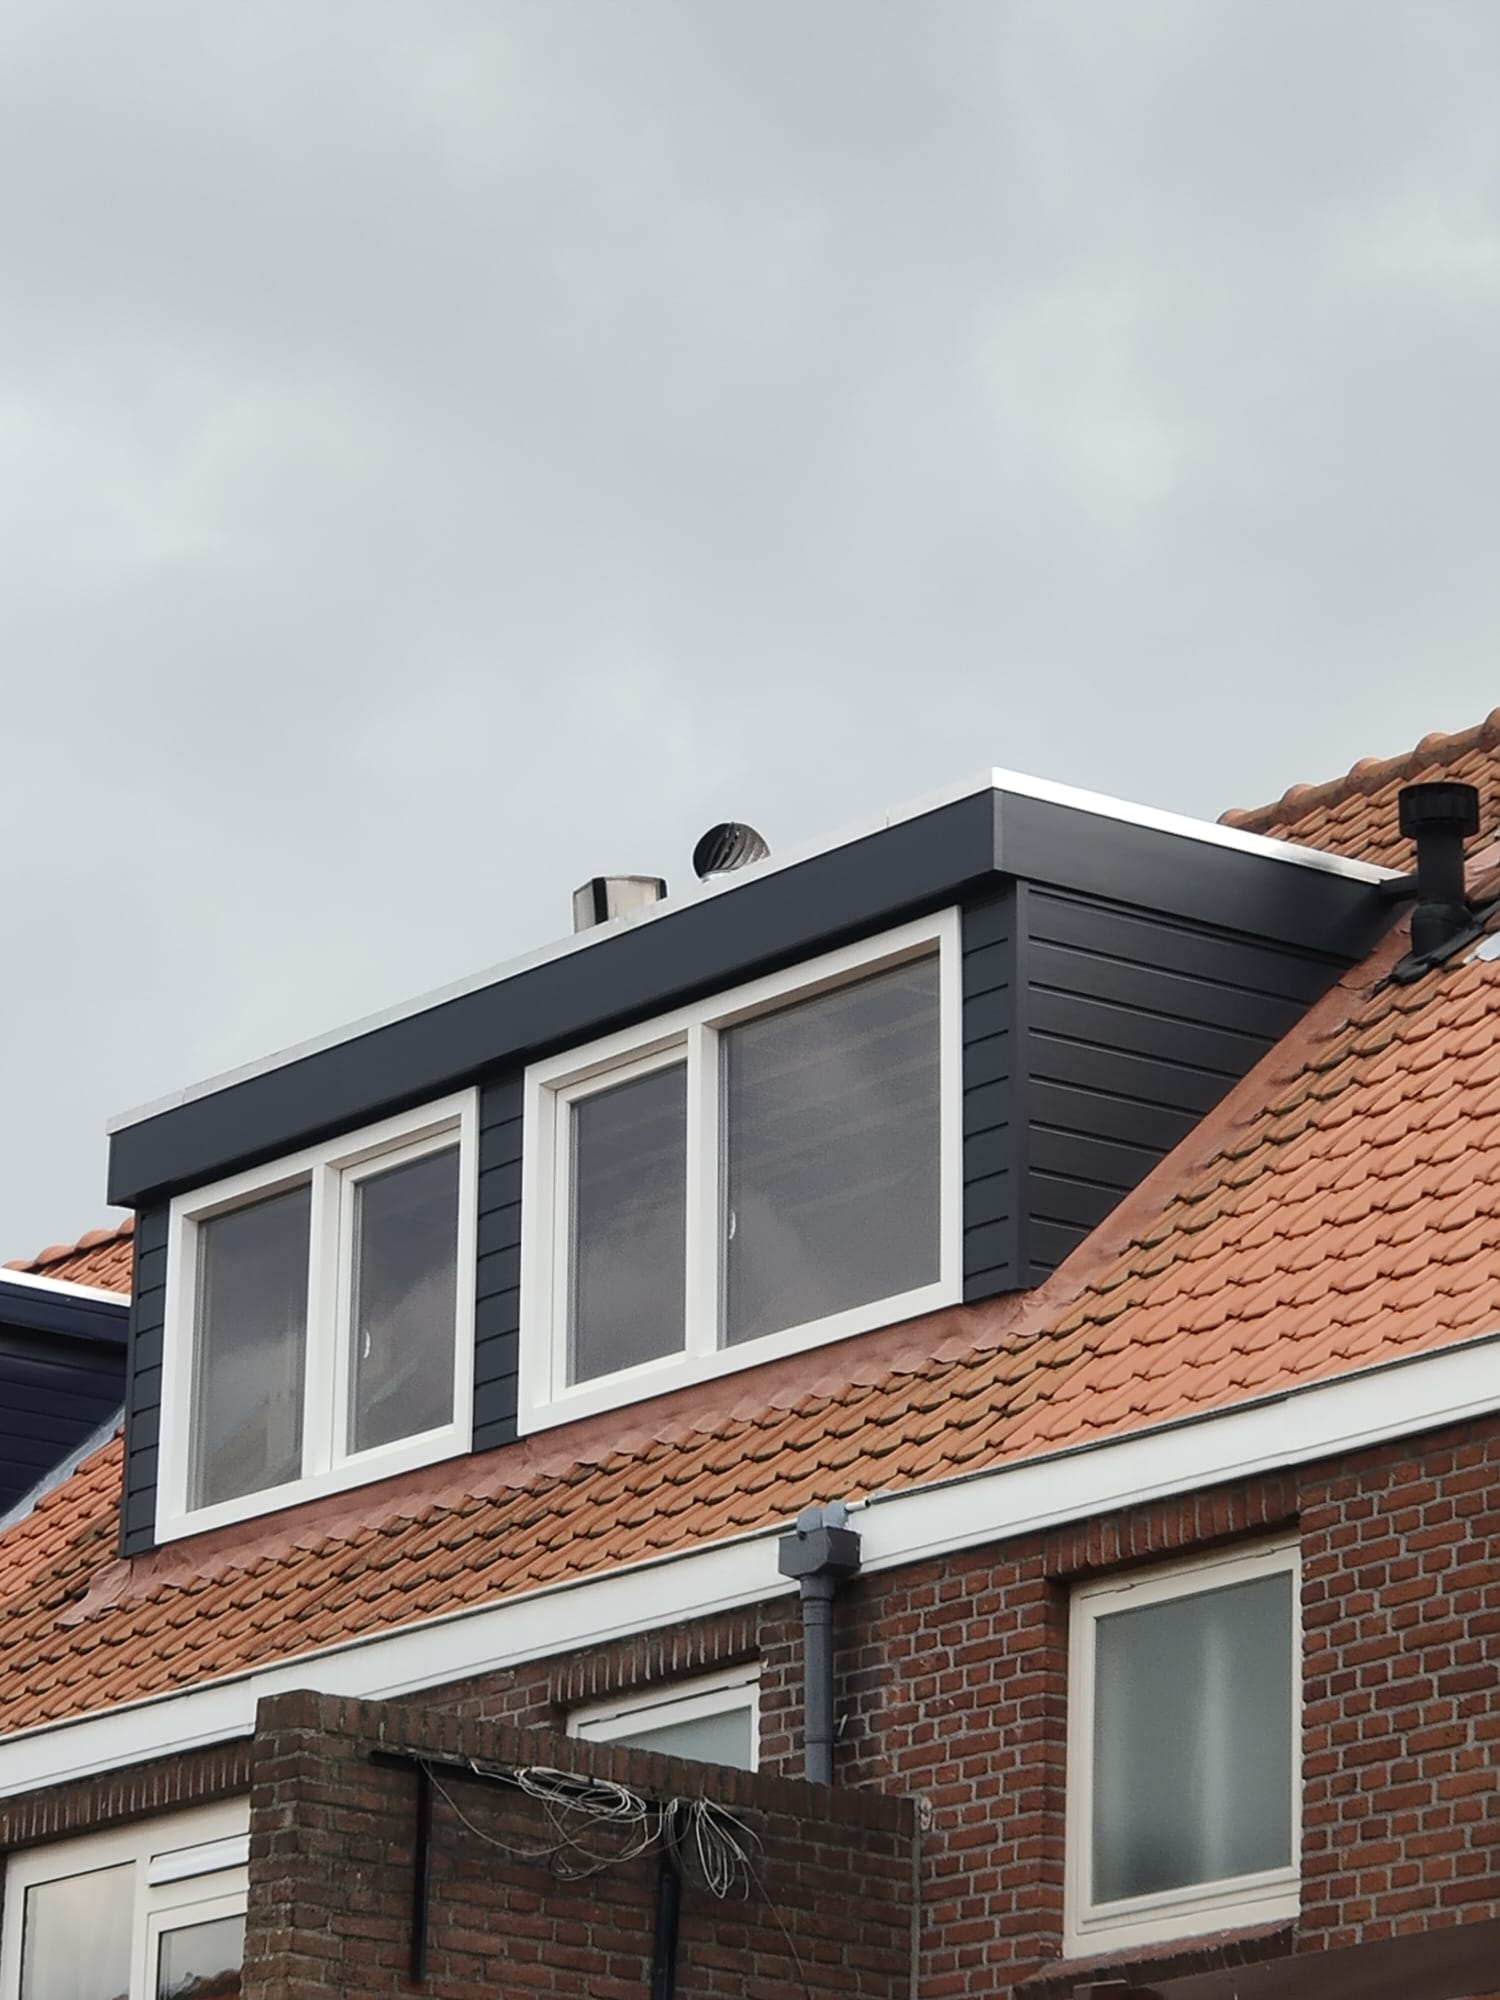 Dakkapel op een dak met oranje dakpannen